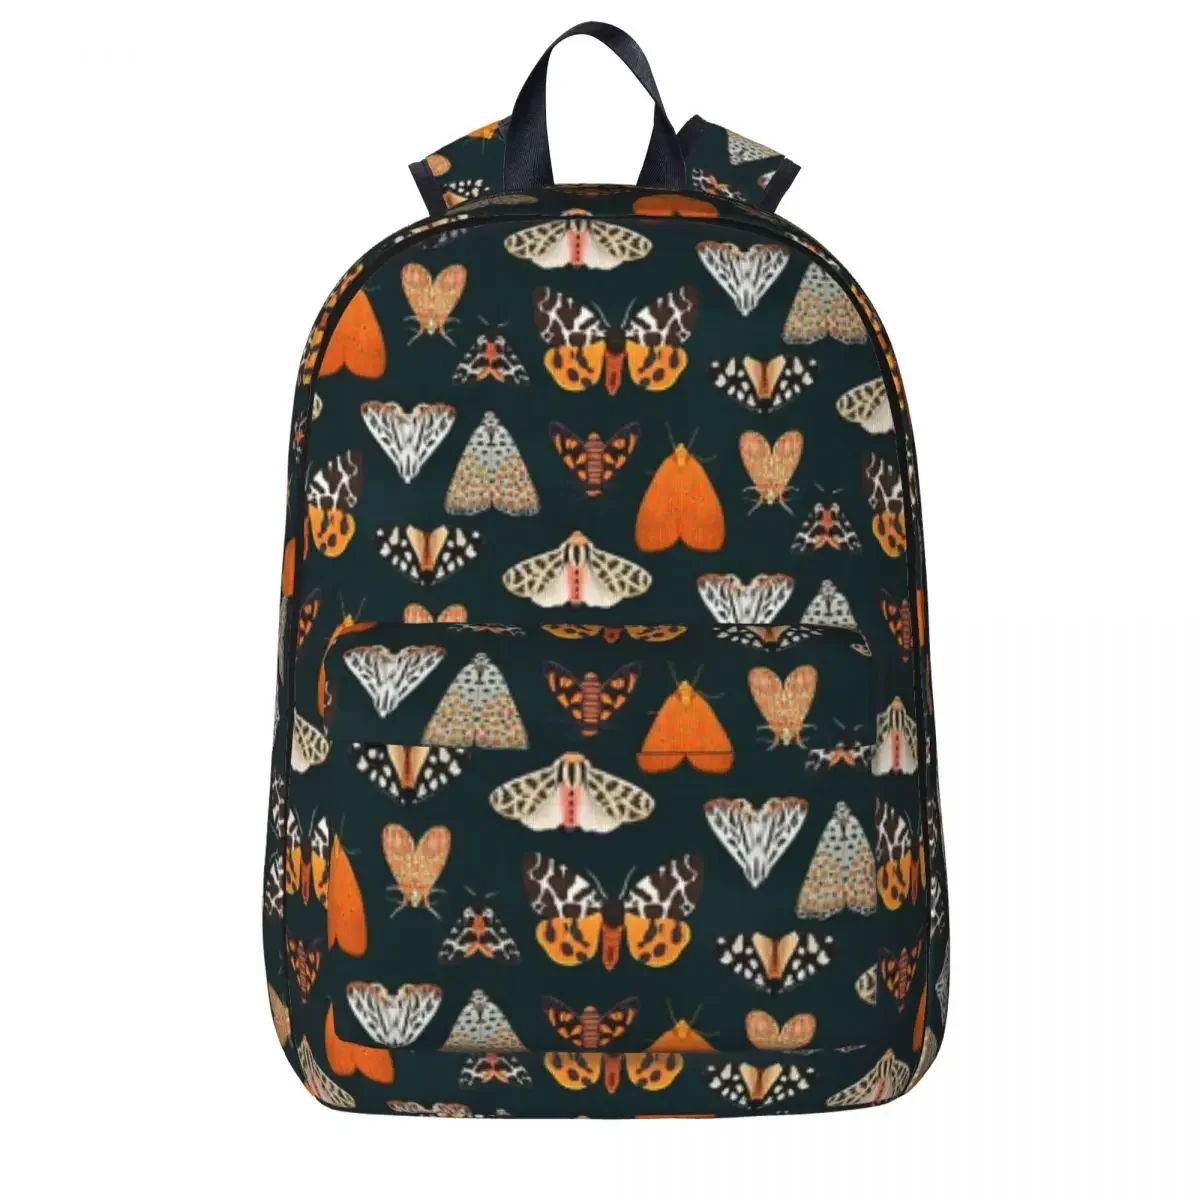 

Рюкзак Tiger Moths, вместительная Студенческая сумка для книг, сумка на плечо, рюкзак для ноутбука, водонепроницаемый дорожный рюкзак, детская школьная сумка